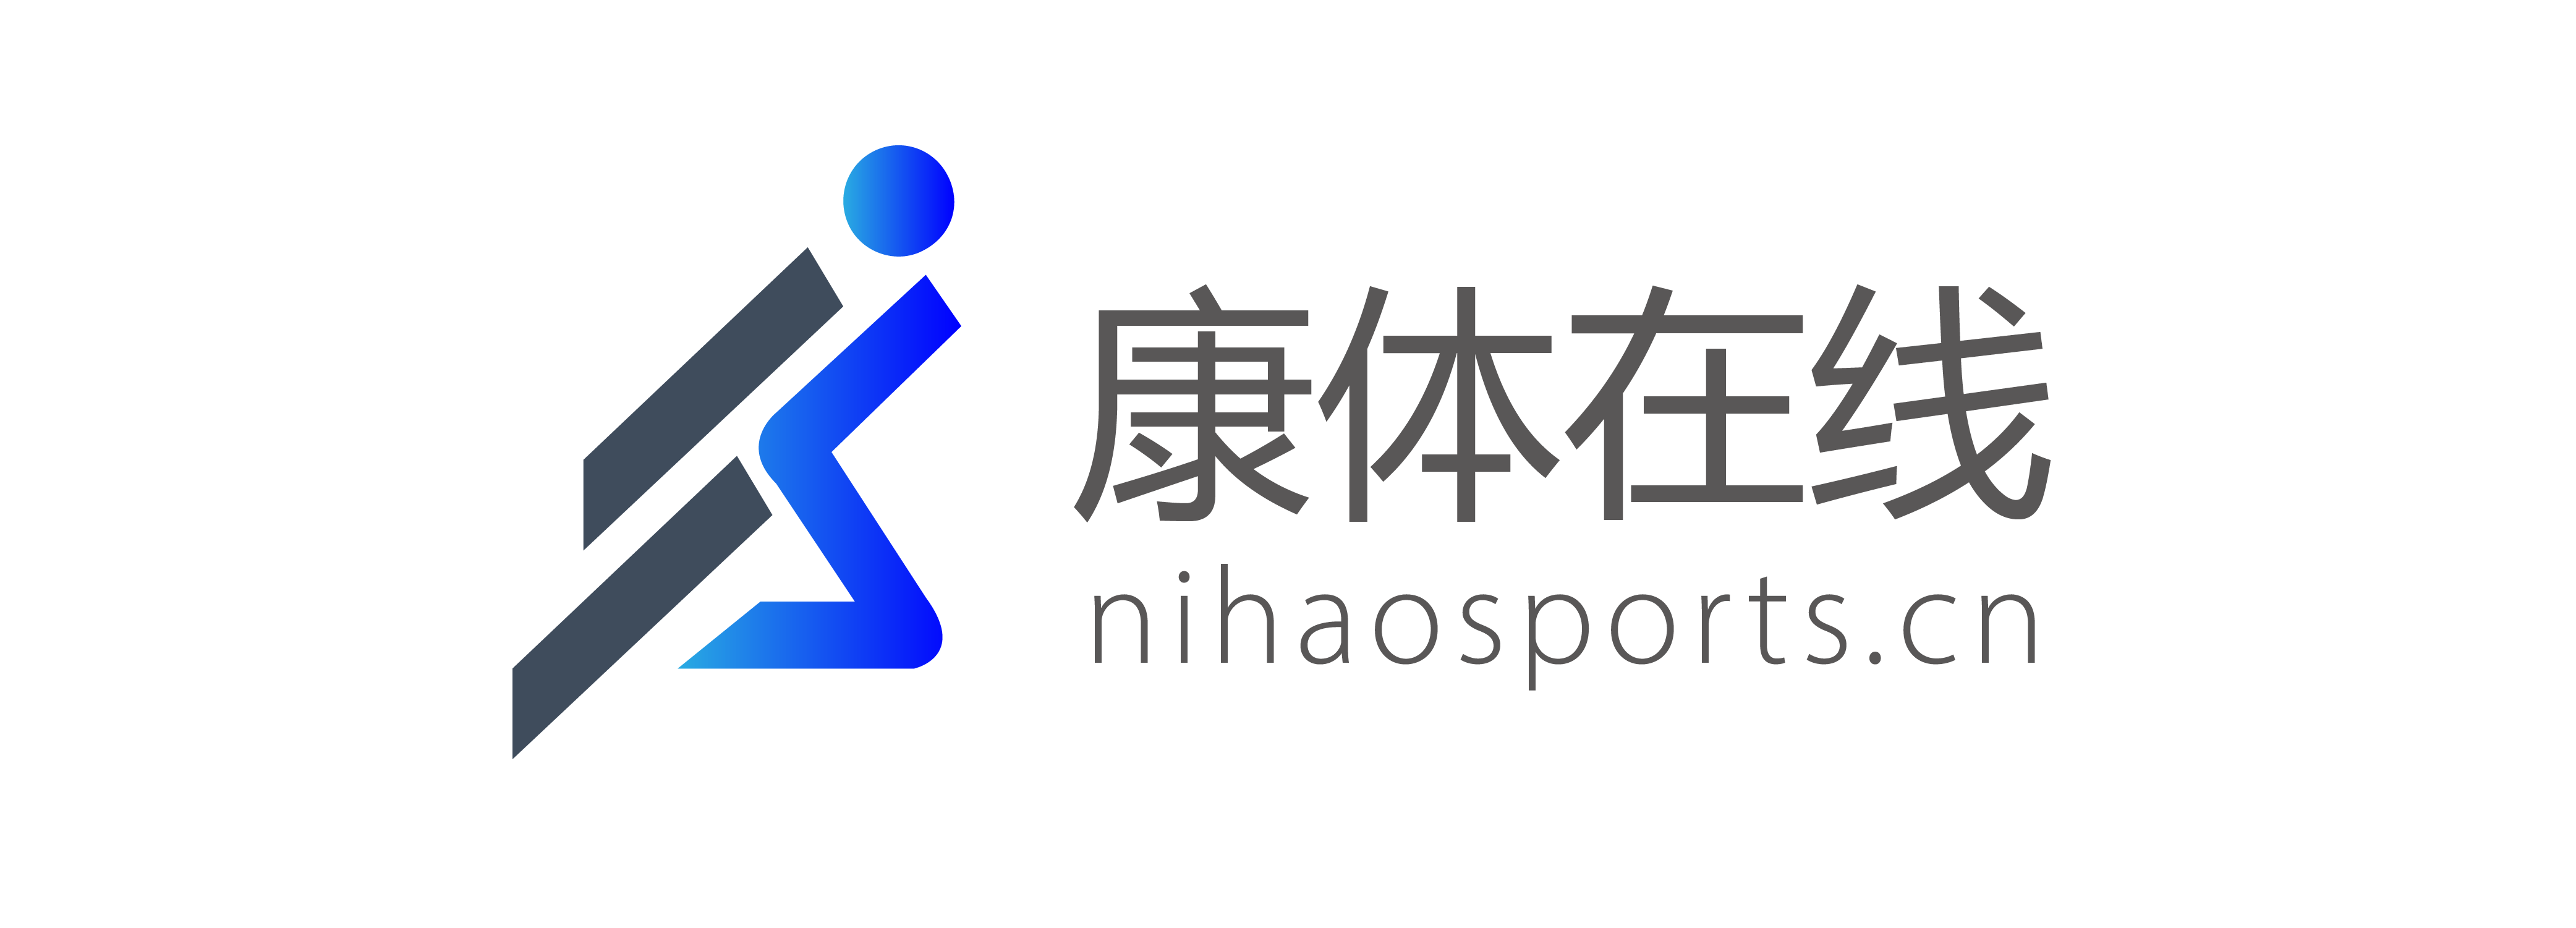 B2B rastlinná forma – Nihaosports